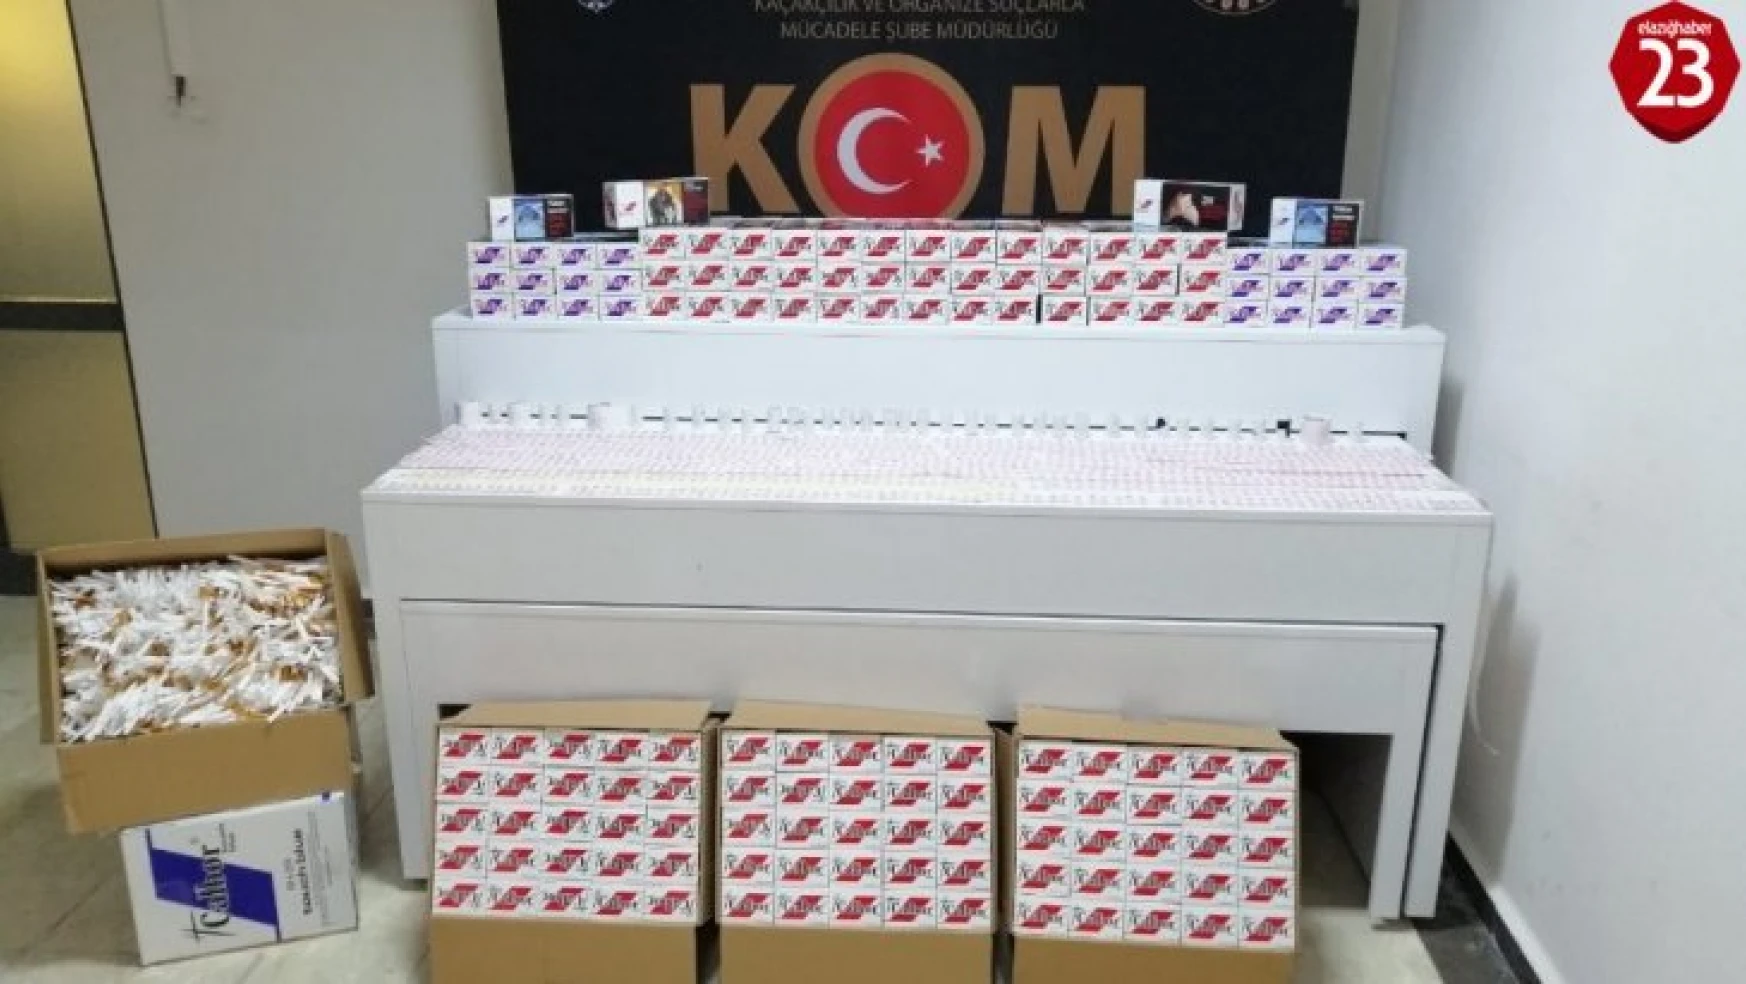 Elazığ'da 225 karton kaçak sigara ve bandroller ele geçirildi